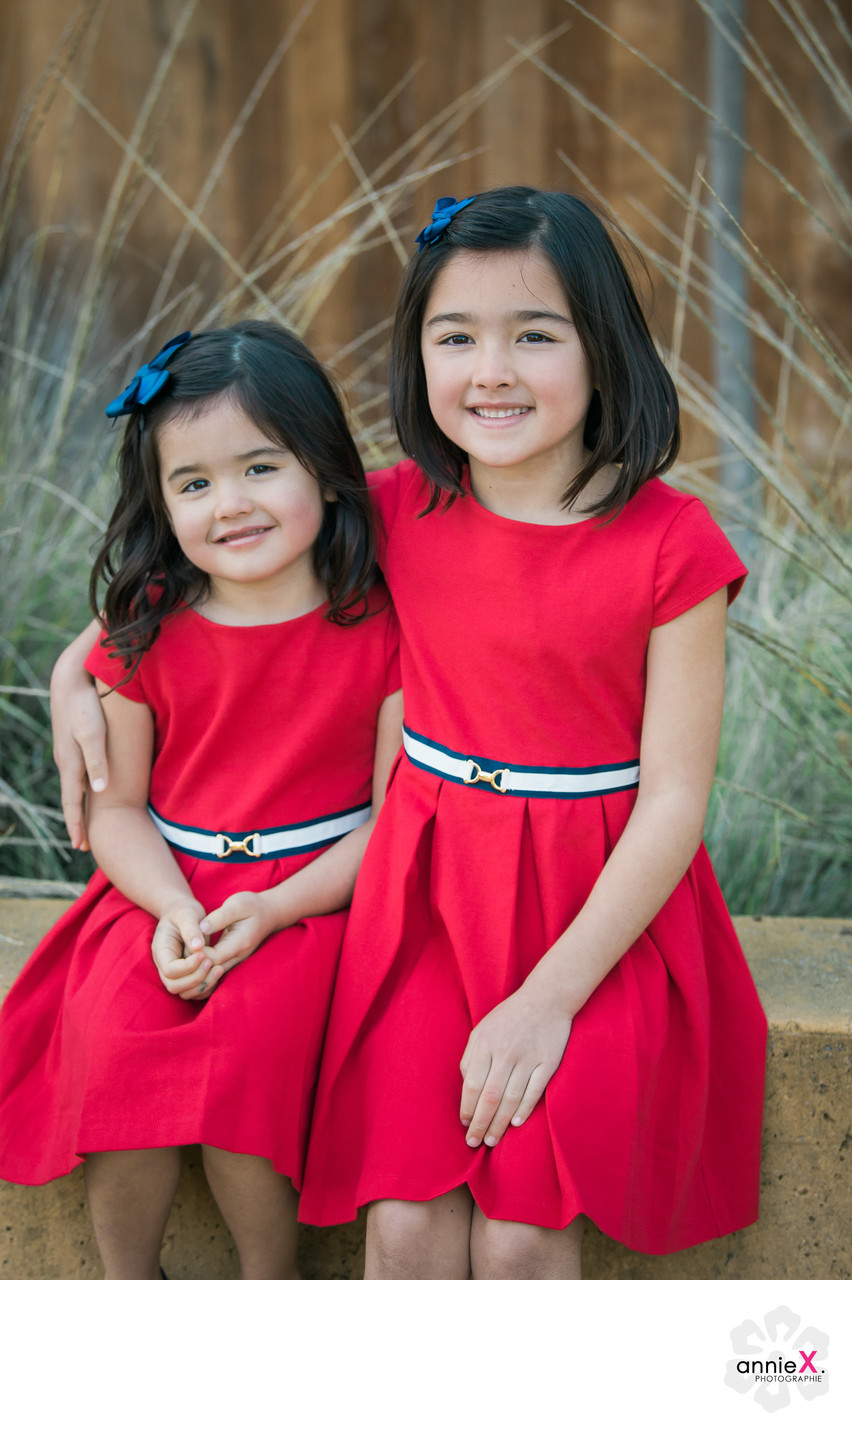 Cute siblings in red dresses